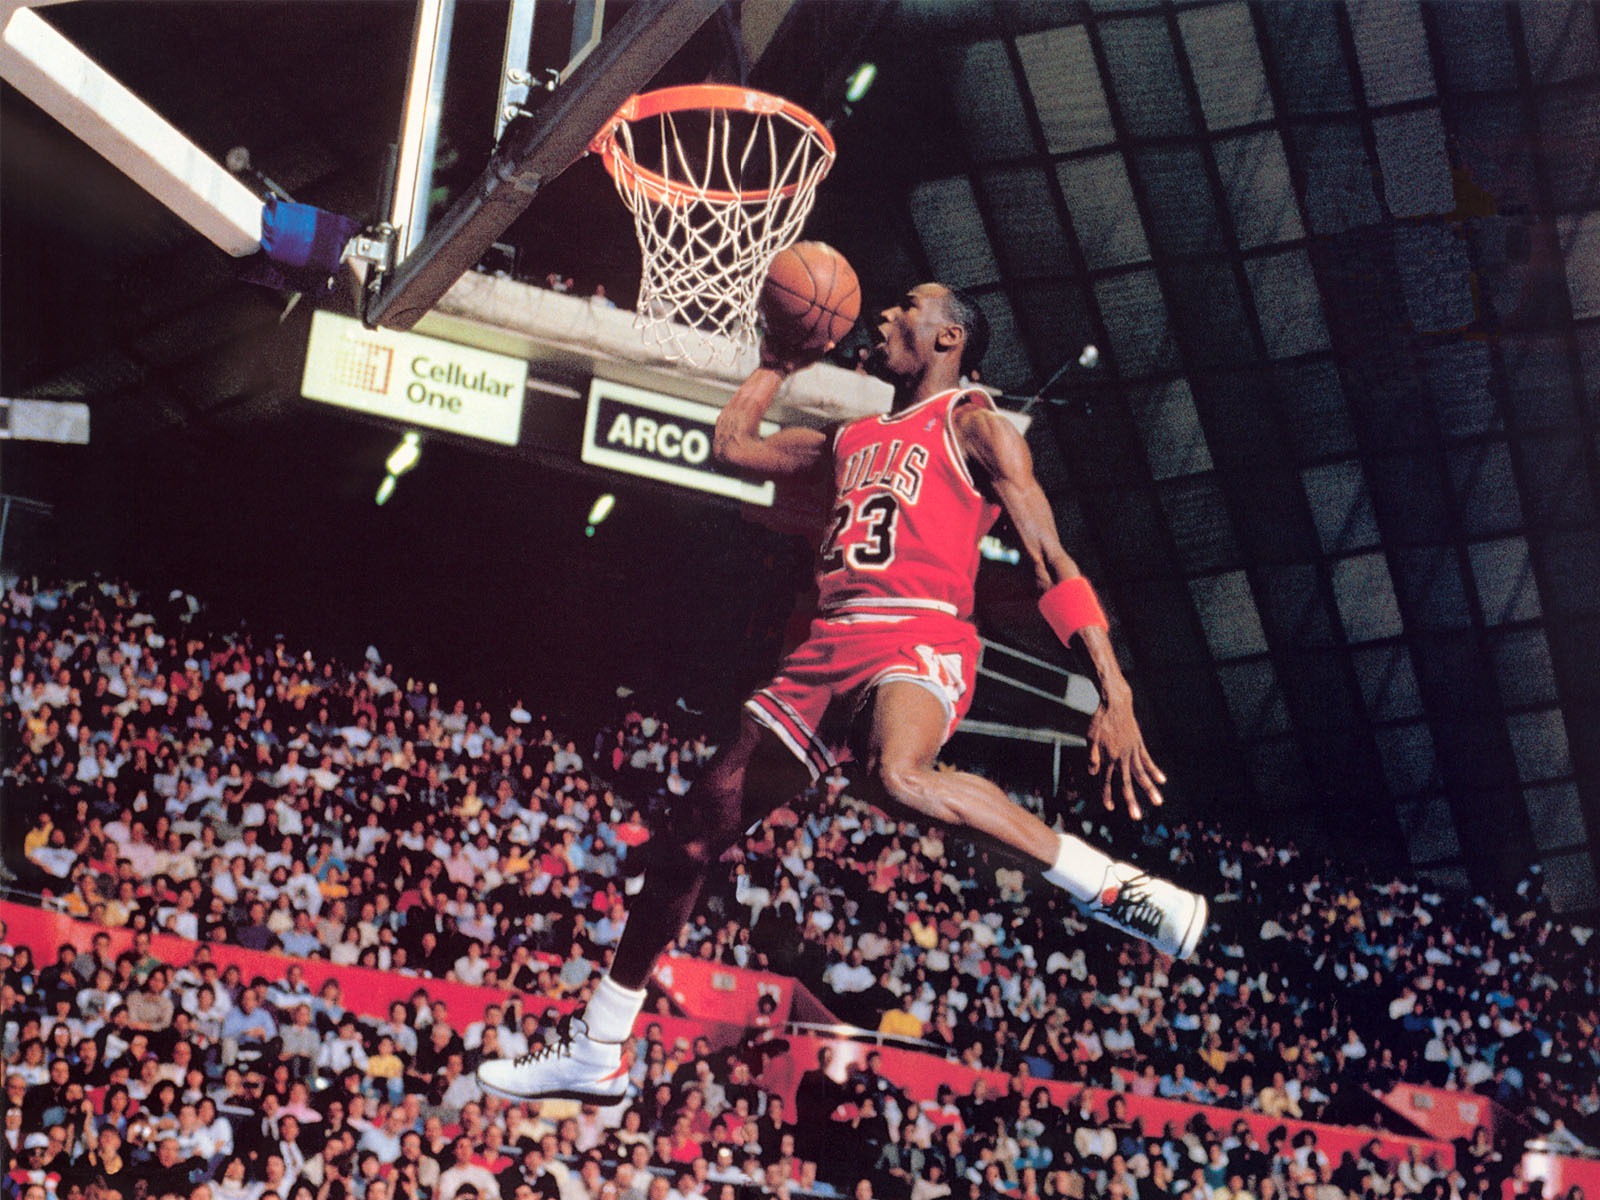 soccer Michael Jordan HD Wallpapers